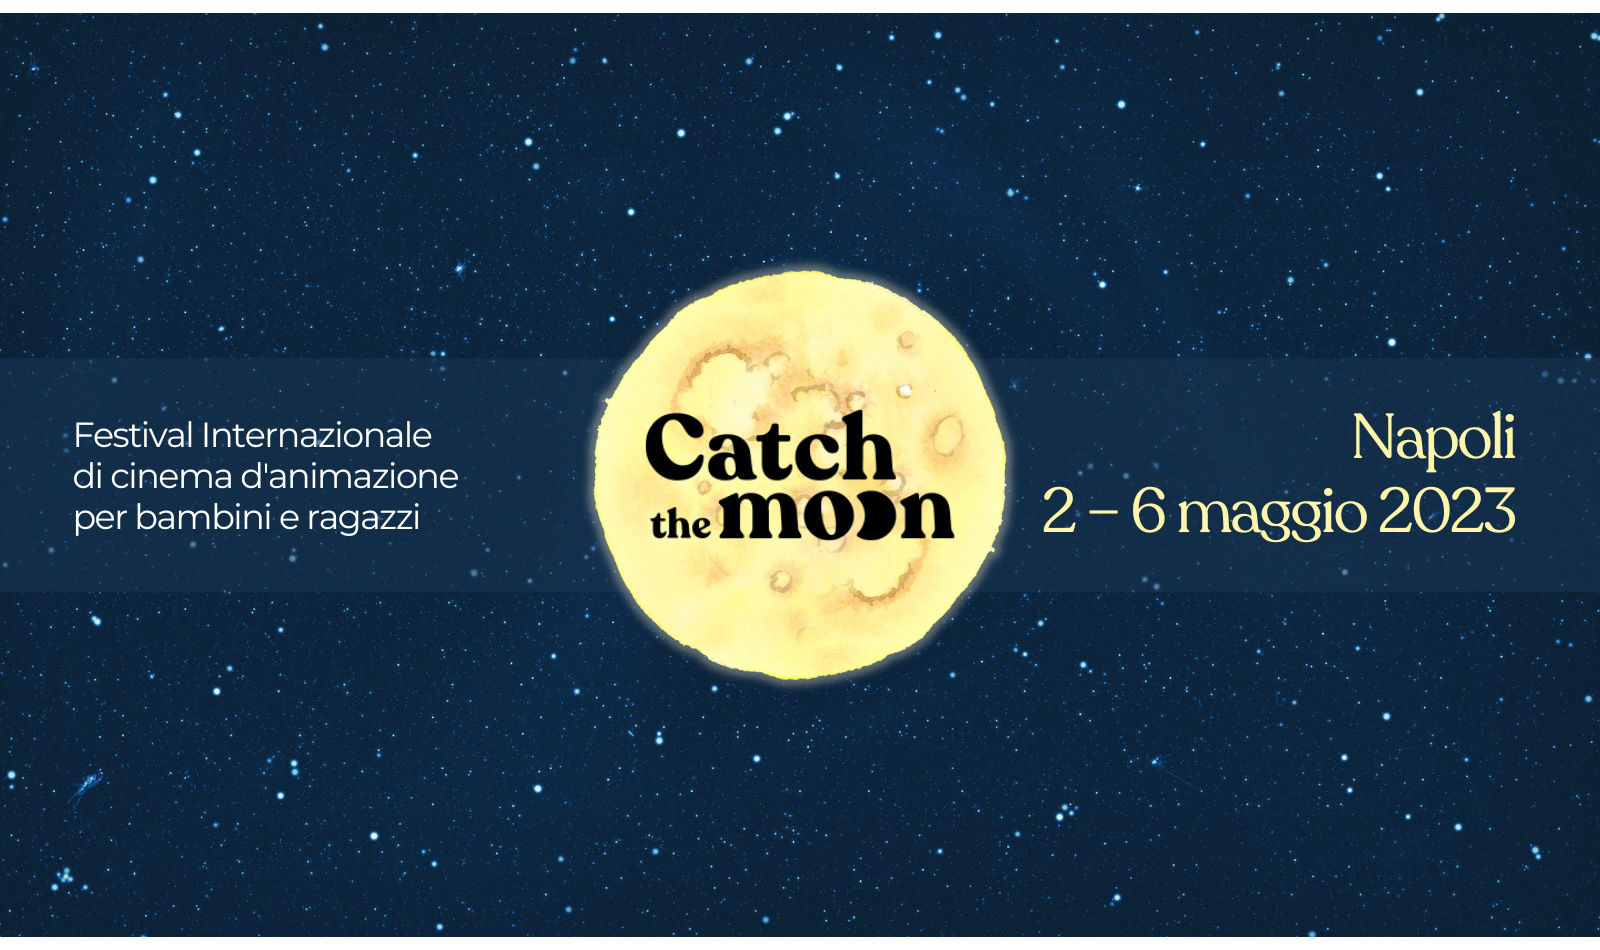 Catch the Moon, Festival Internazionale del cinema d’animazione